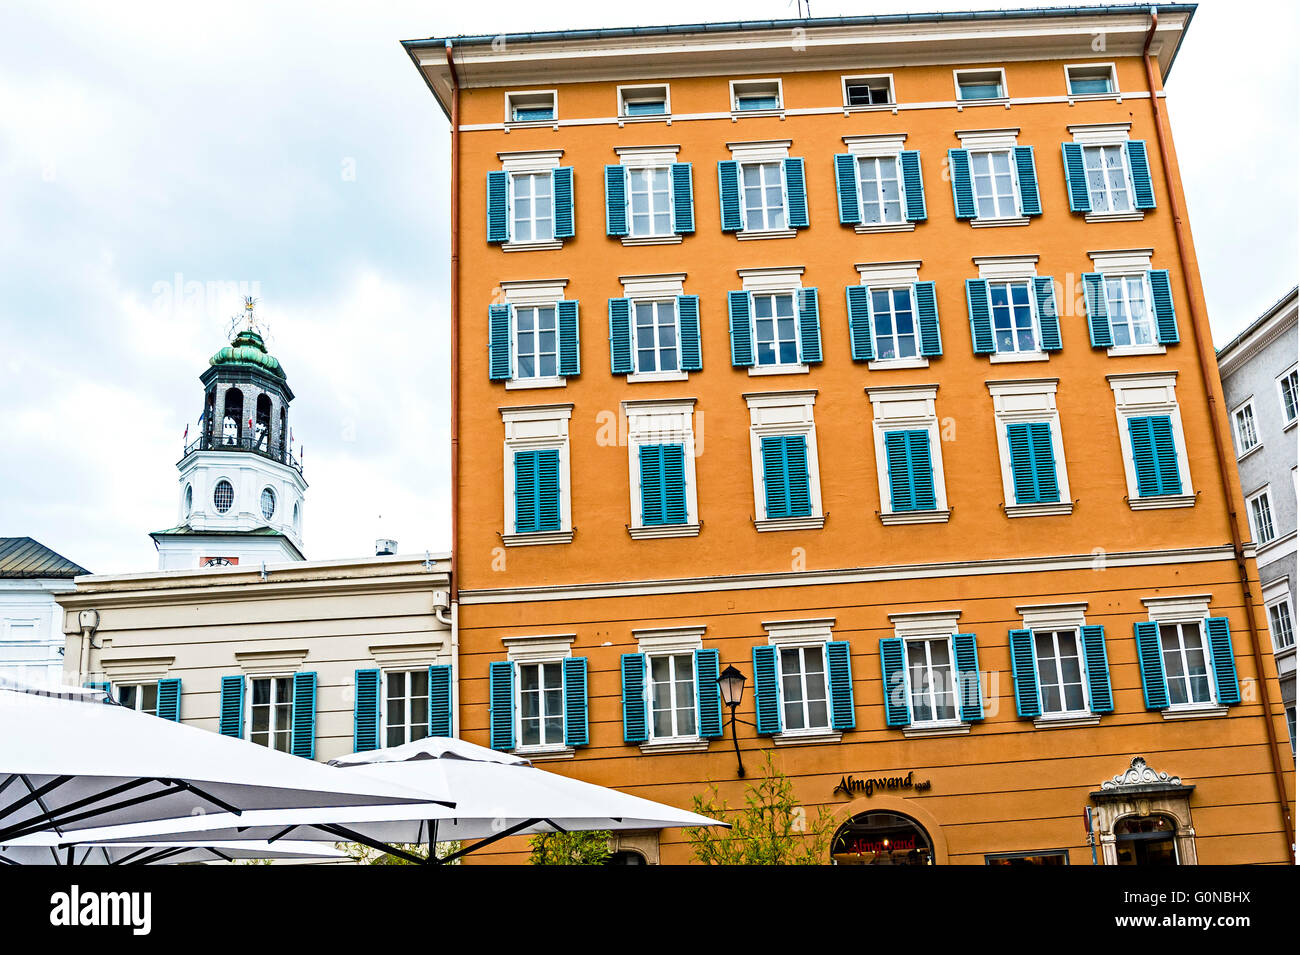 Salzburg, Haus am Waagplatz im italienischen Stil; Haus bin Waagplatz in Italienischem Stil Stockfoto